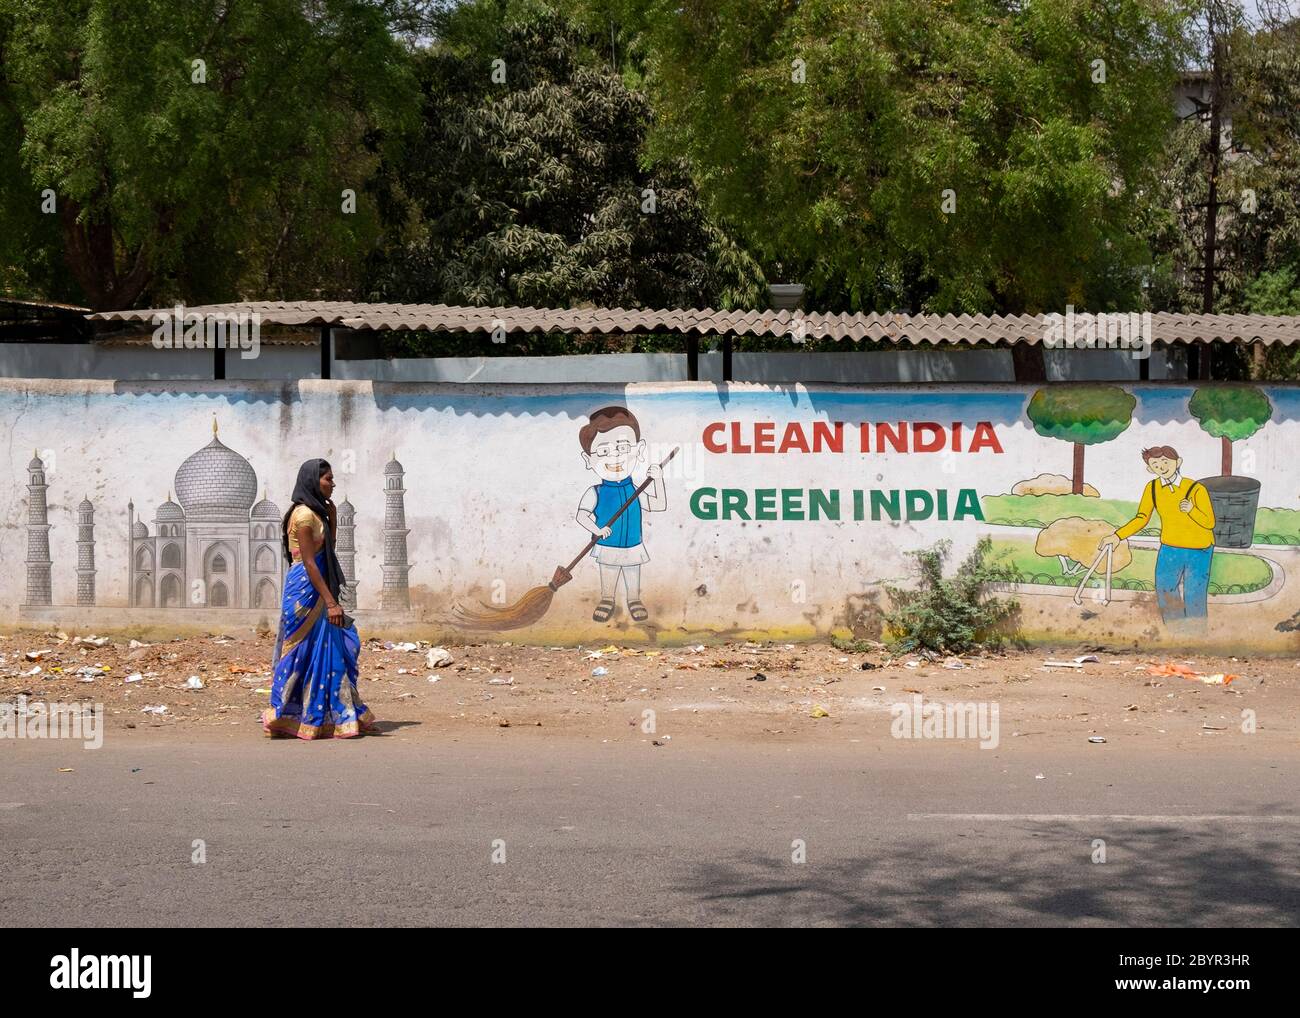 Femme locale marchant devant un mur avec un slogan favorisant une Inde propre, Aurangabad, Maharashtra, Inde. Banque D'Images